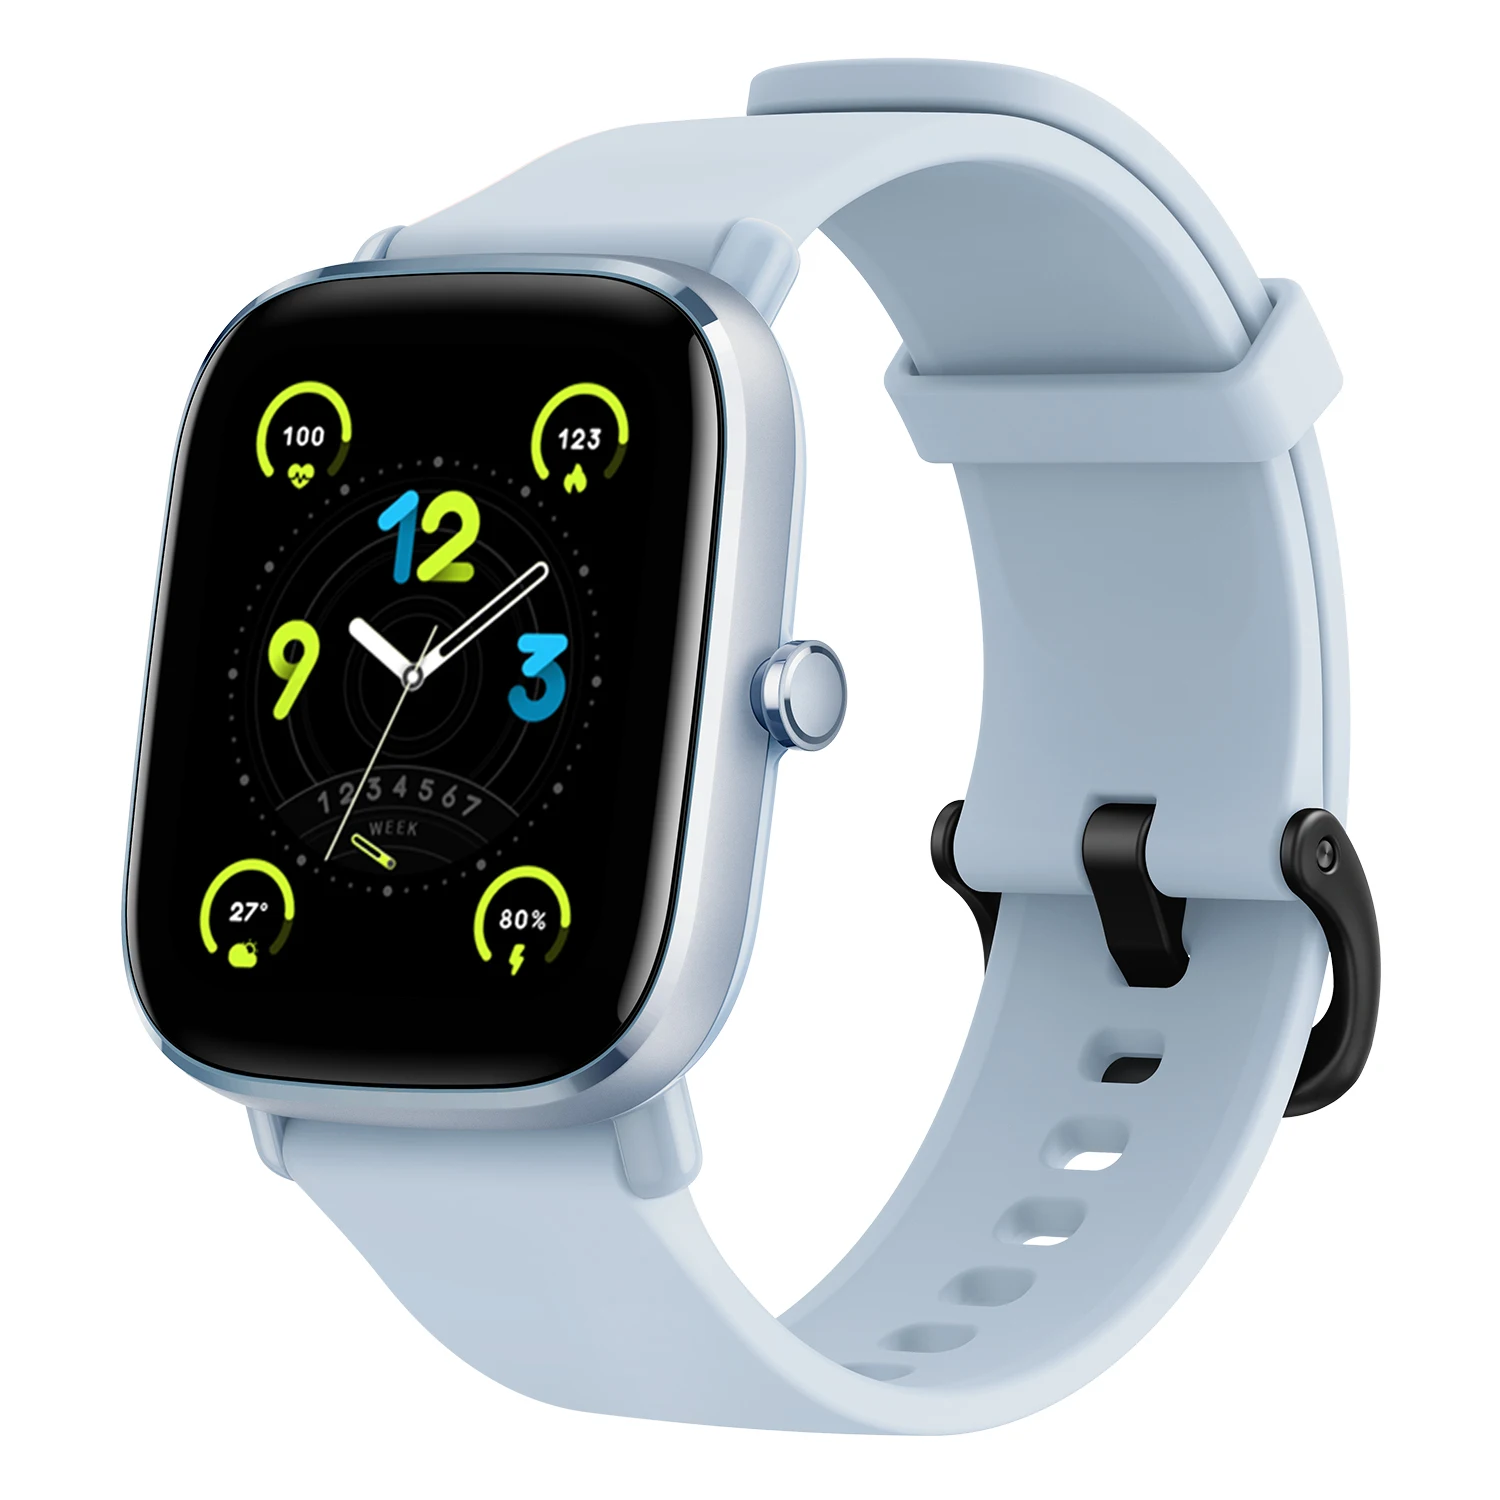  [Новая версия] Смарт-часы Amazfit GTS 2 Mini 68 + спортивные режимы мониторинга сна Смарт-часы для Android для iOS 